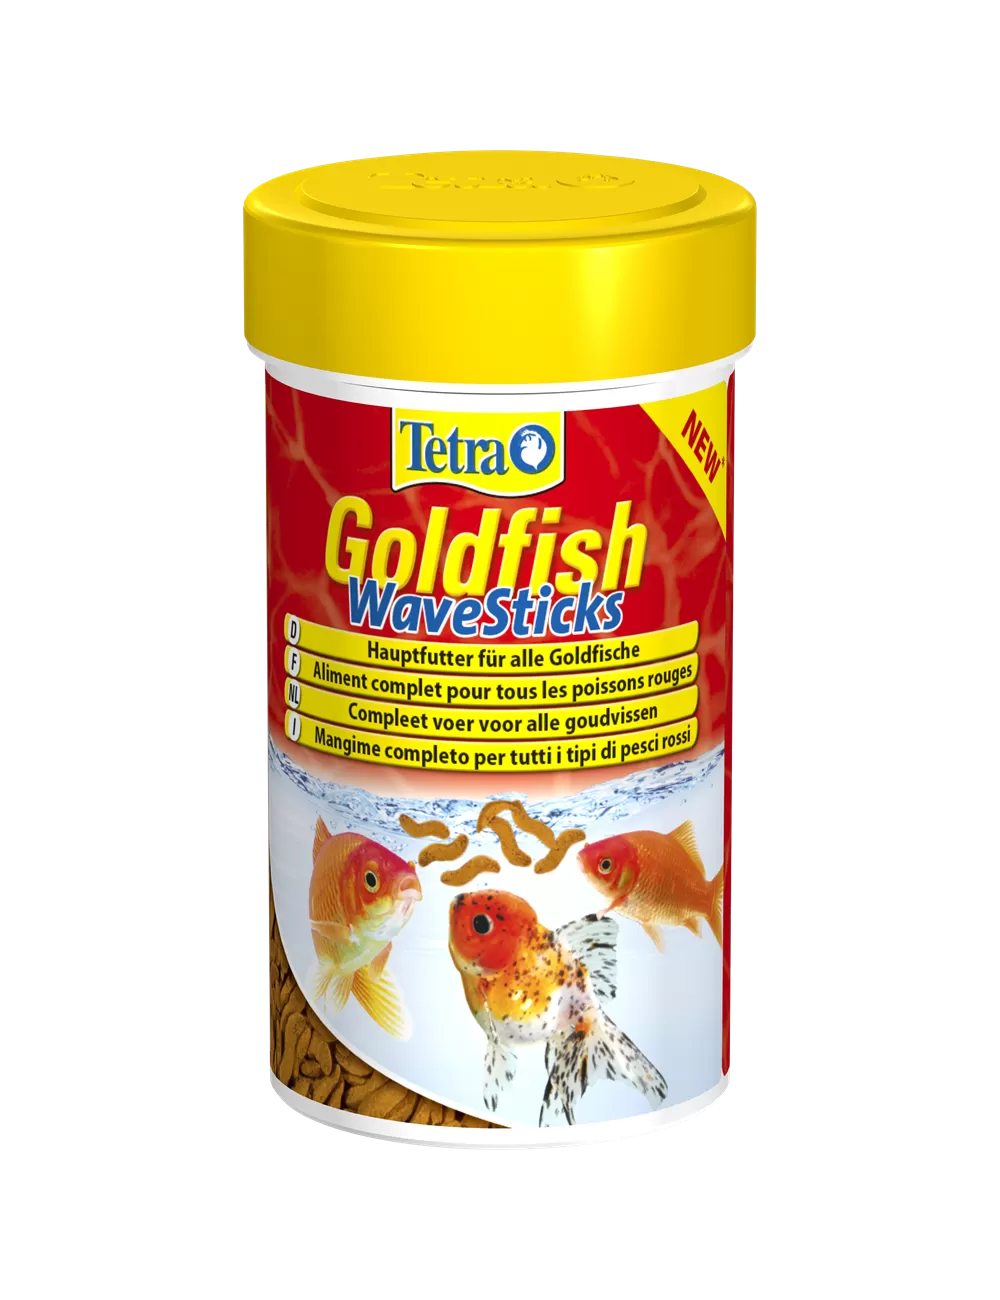 Nourriture complète pour poissons rouges, Tetra Goldfish : 250 ML